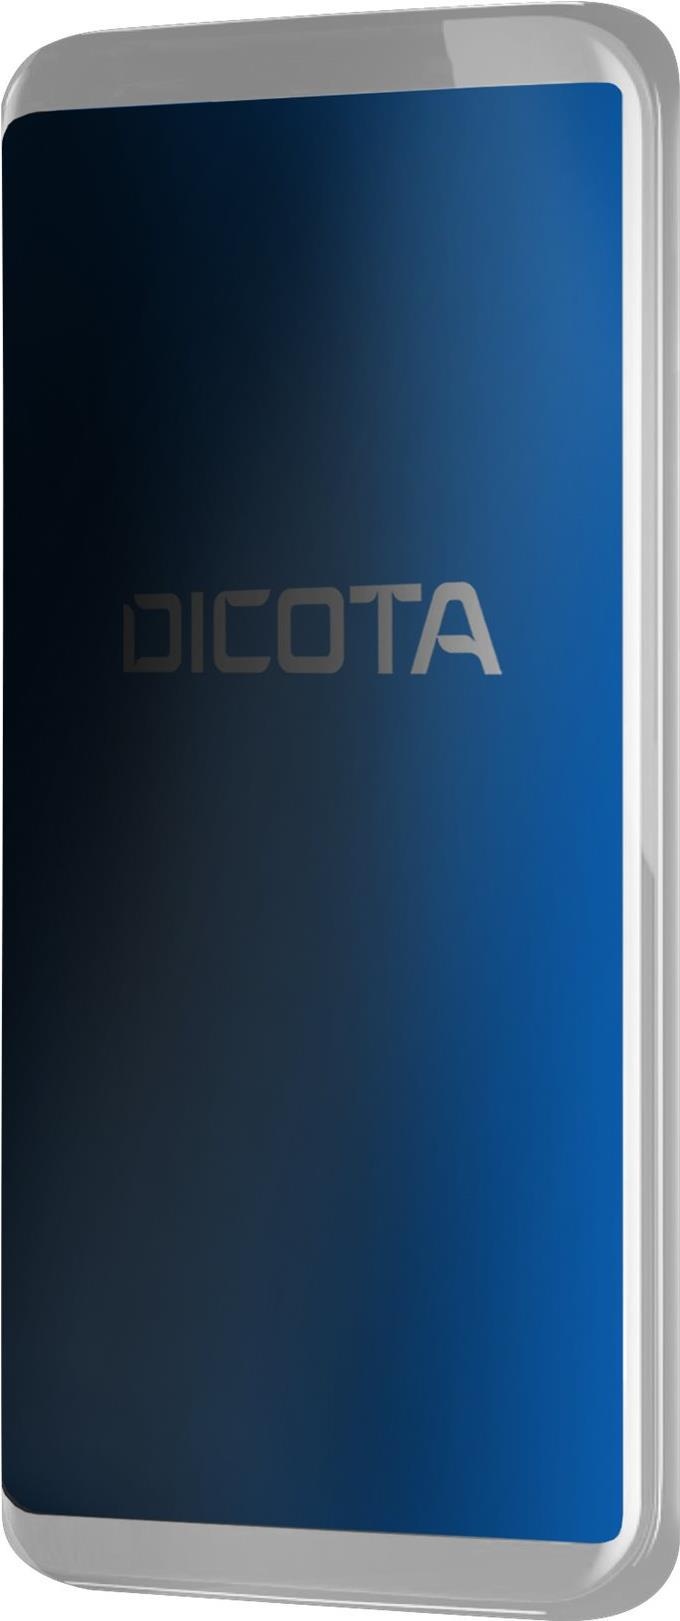 DICOTA Privacy Filter 4-Way - Sichtschutzfilter - Schwarz - für Apple iPhone 11 Pro Max